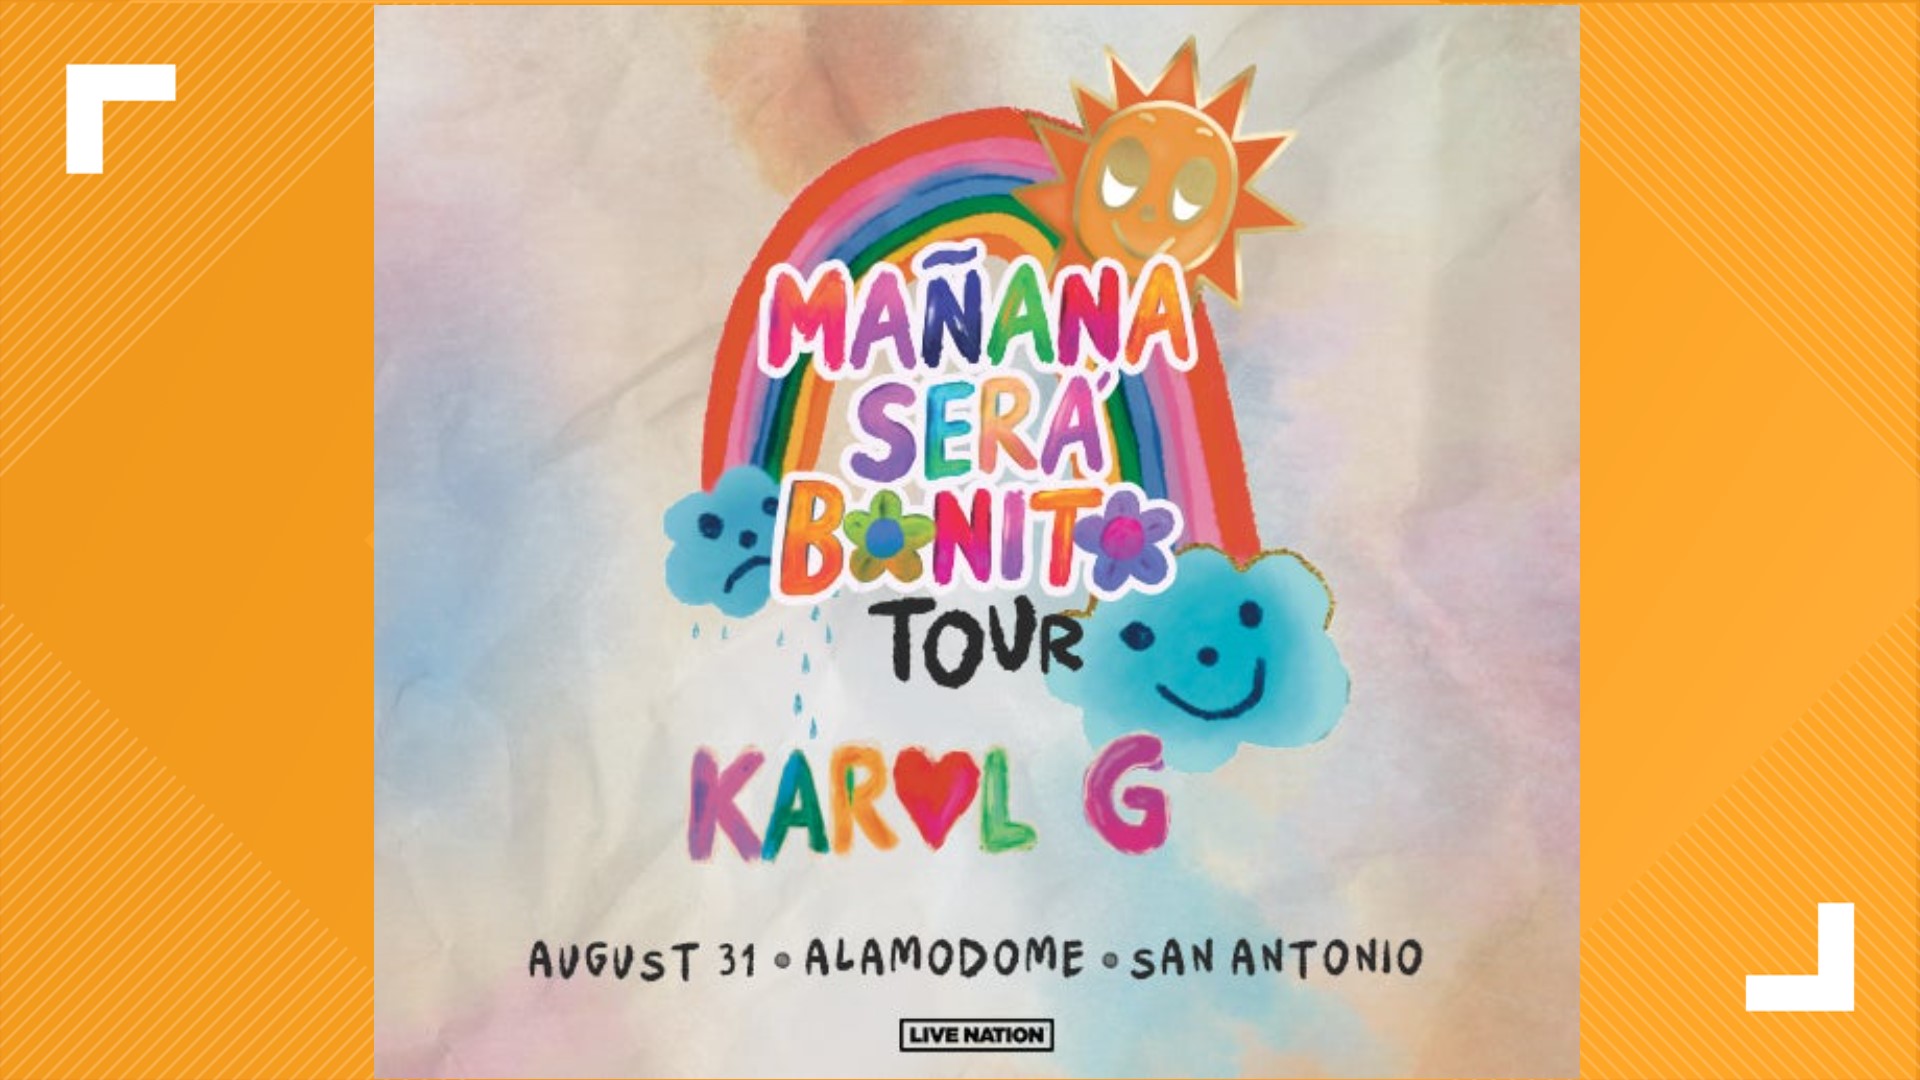 Karol G Mañana Será Bonito Tour announced at Alamodome